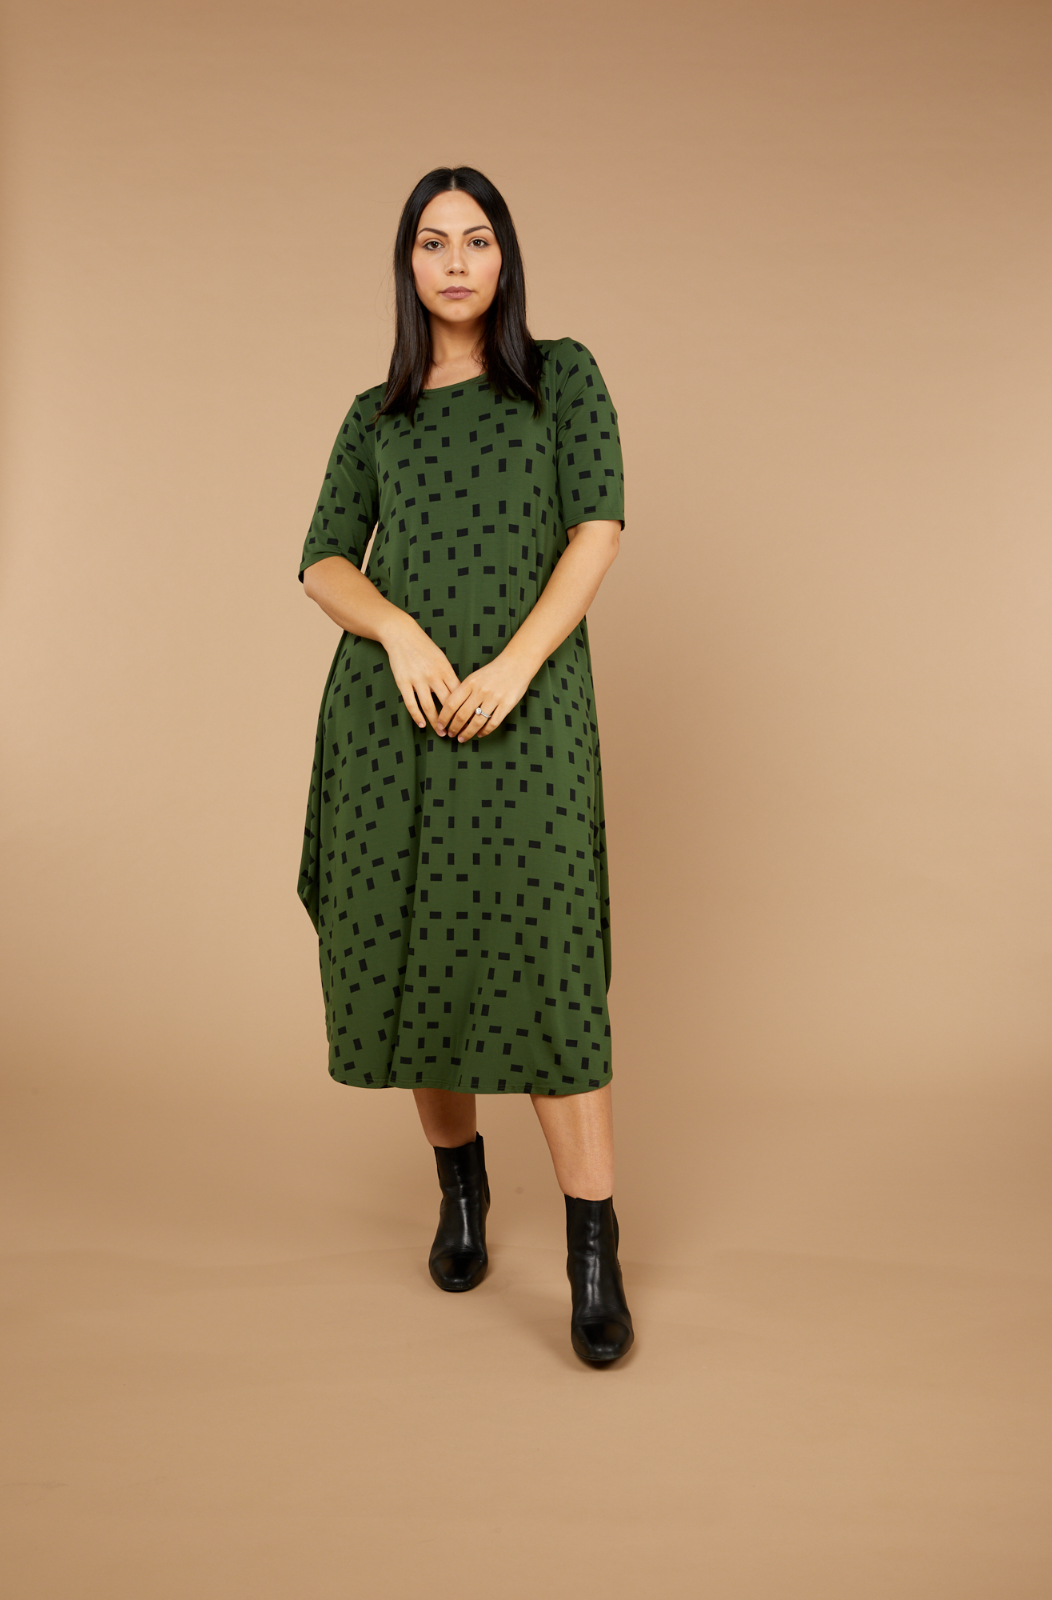 Tani Original Tri Dress in Moss Print